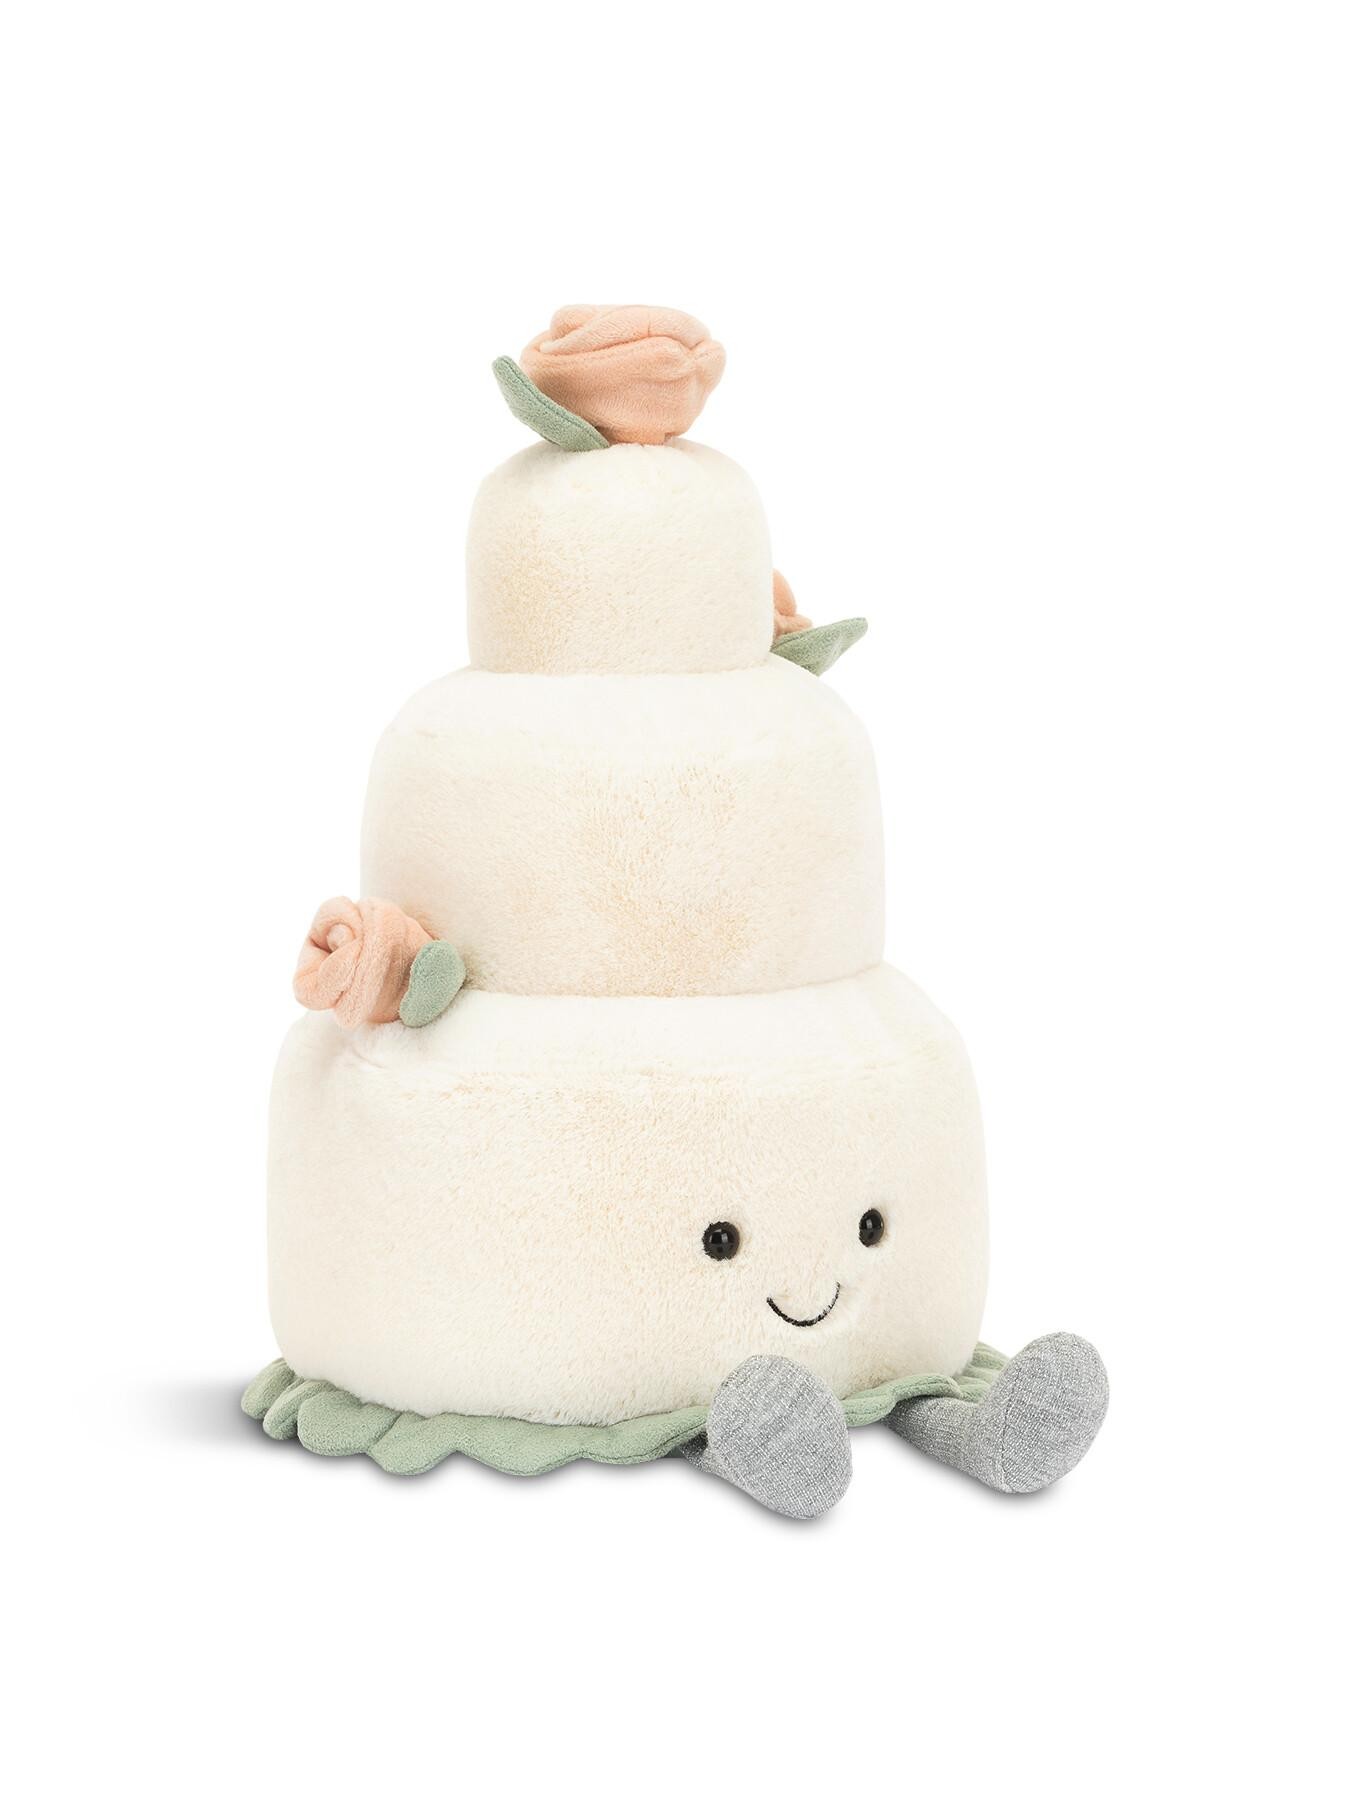 JEL Amuseable wedding cake